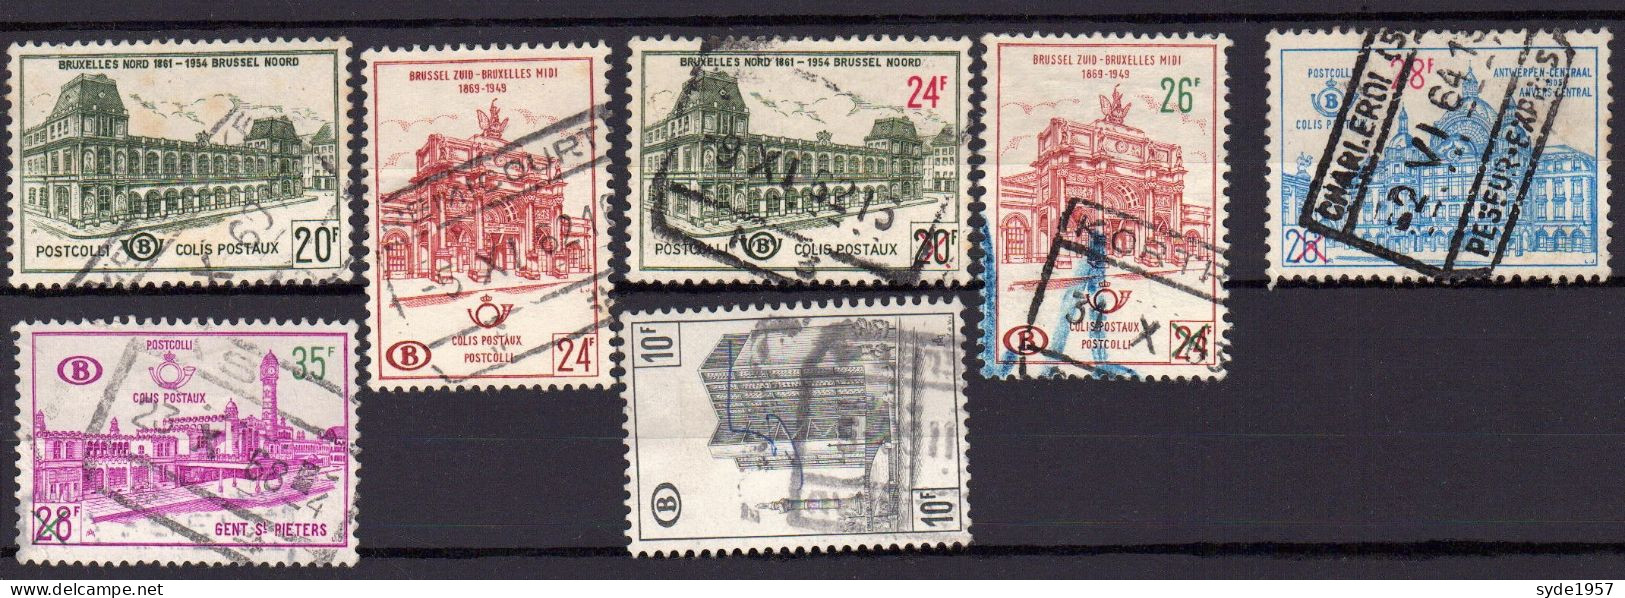 Belgique Chemin De Fer 1959-1968 COB CF366, 367, 373, 374, 375, 377, 399,  7 Timbres Oblitérés, - Used